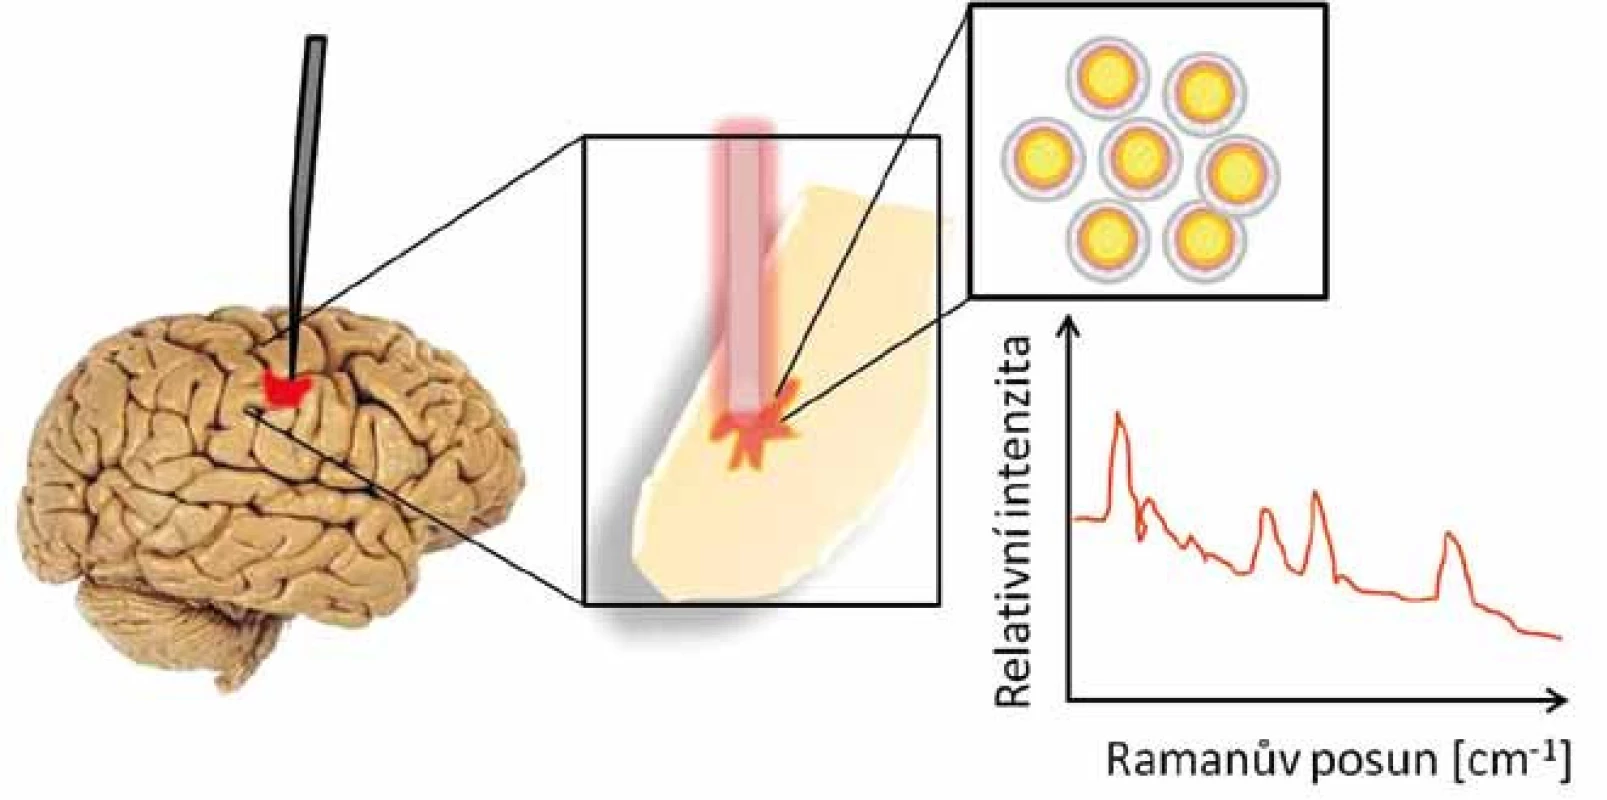 Detekce nádorových buněk mozku pomocí Ramanova skeneru.
Inertní zlaté nanočástice se kumulovaly v mozku v místě nádoru, byly detekovány sondou a zobrazeny v Ramanově spektru.